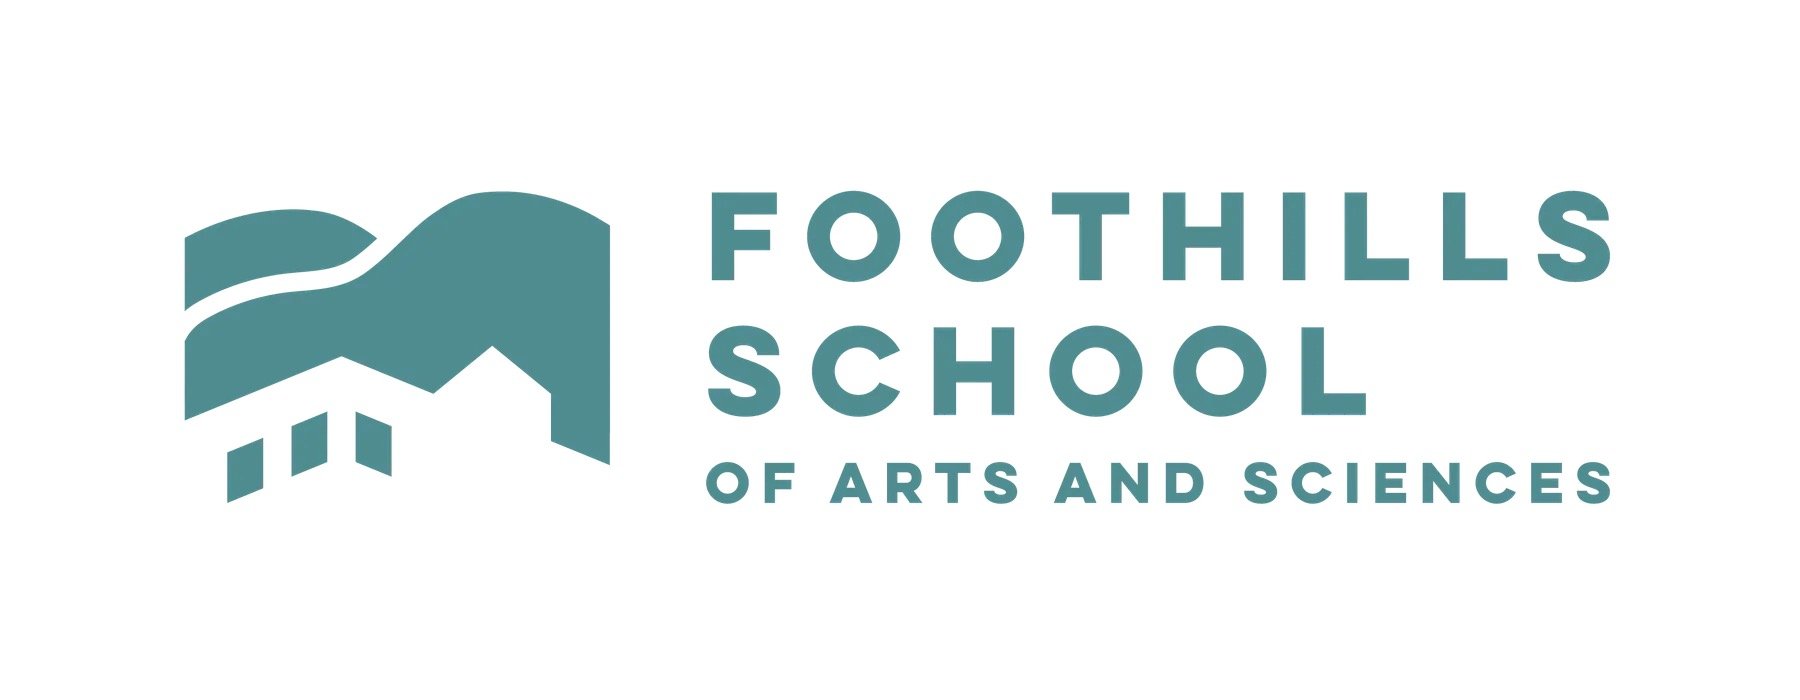 foothills-school-logo.jpg